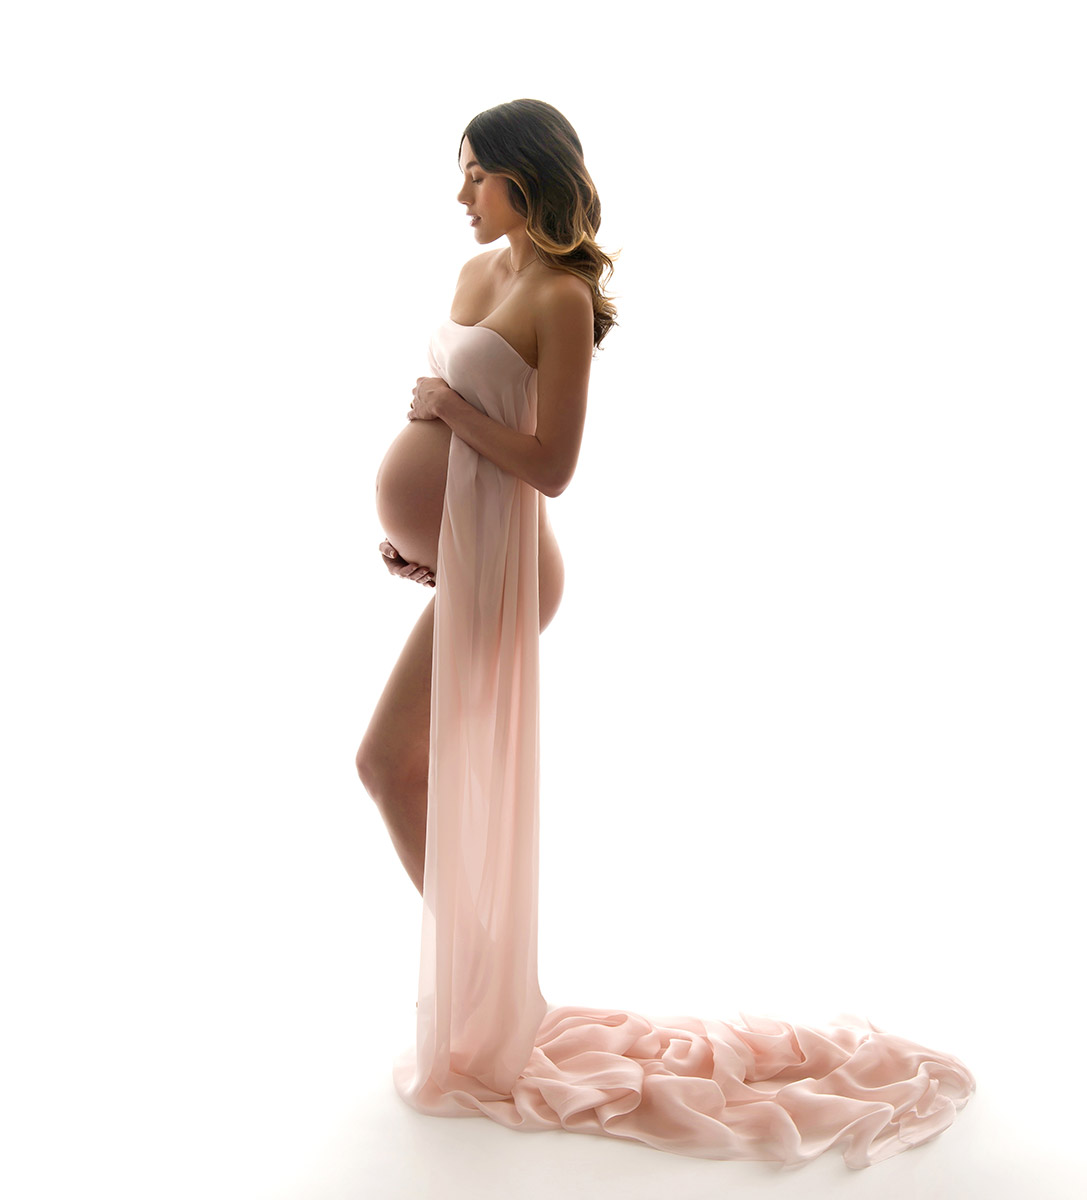 Natural maternity photo of a beautiful woman wearing draped fabric